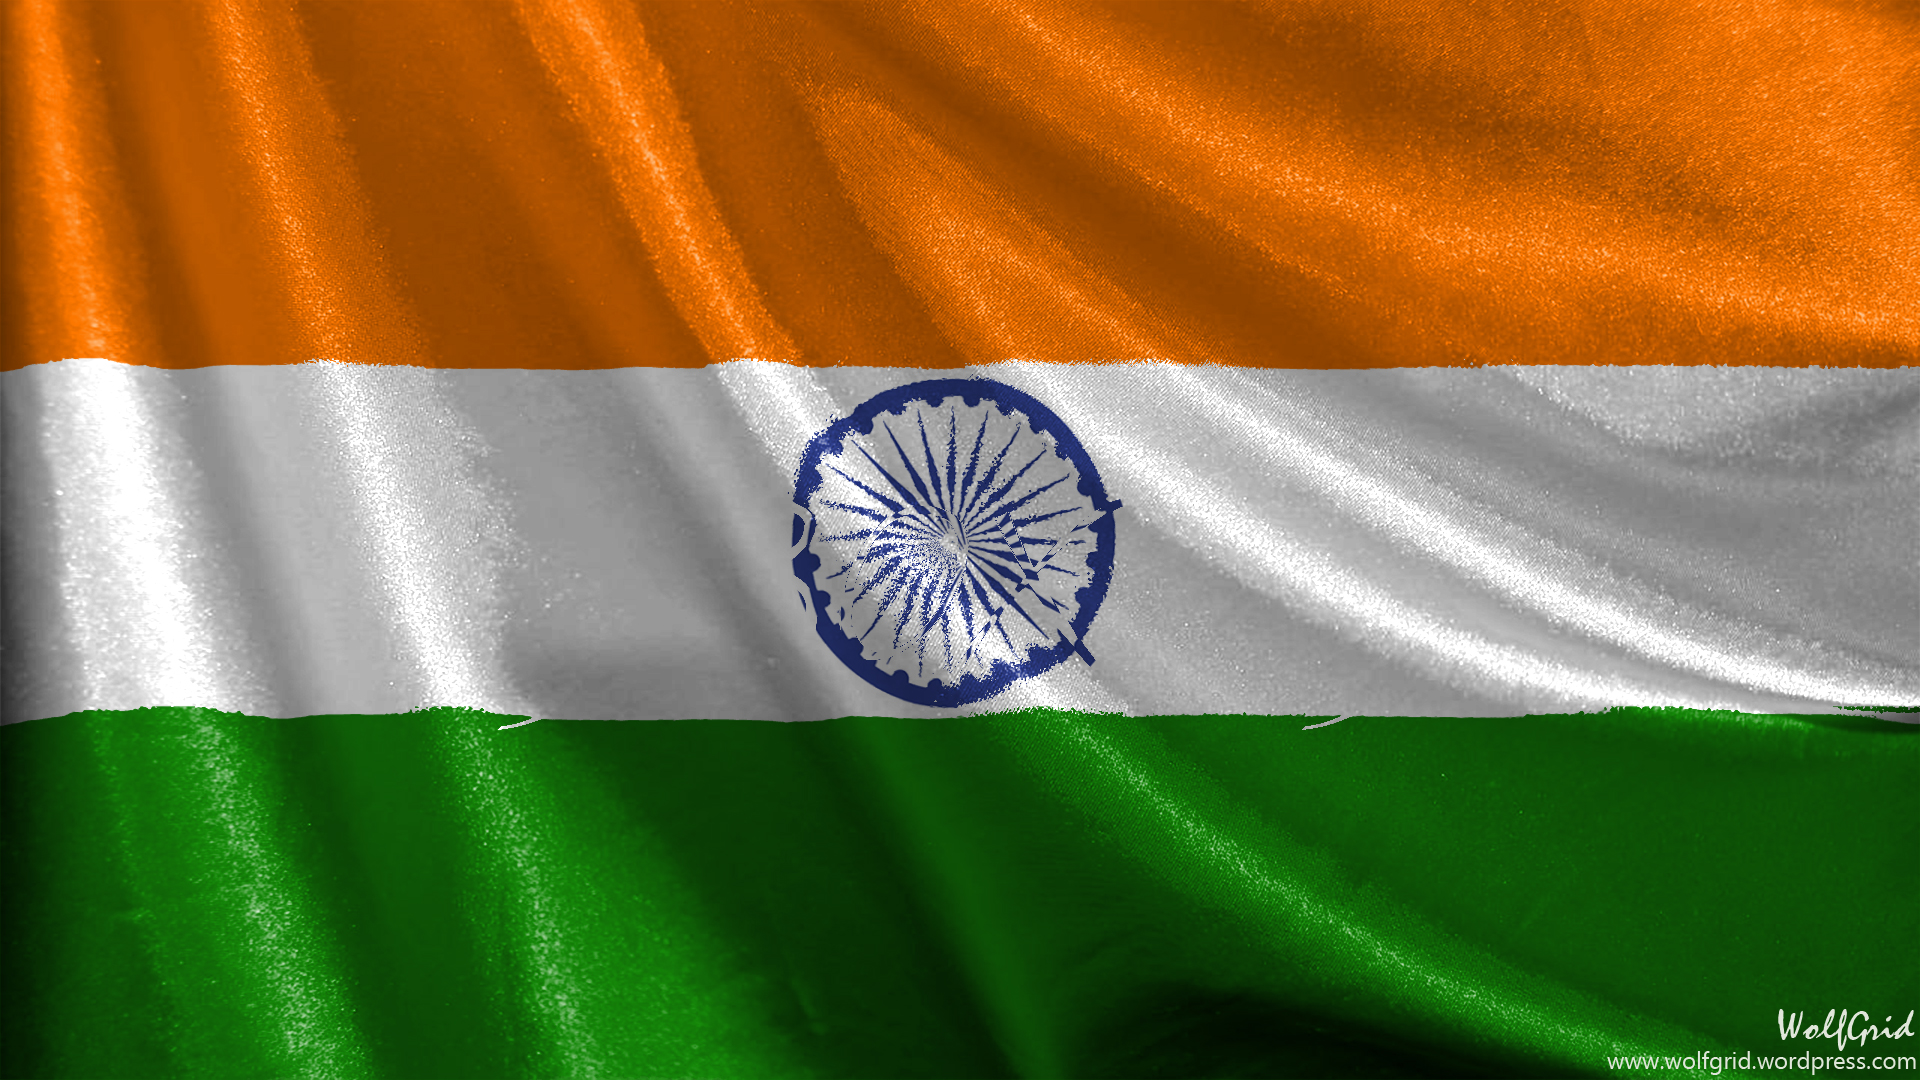 Скачать обои Флаг Индии на телефон бесплатно